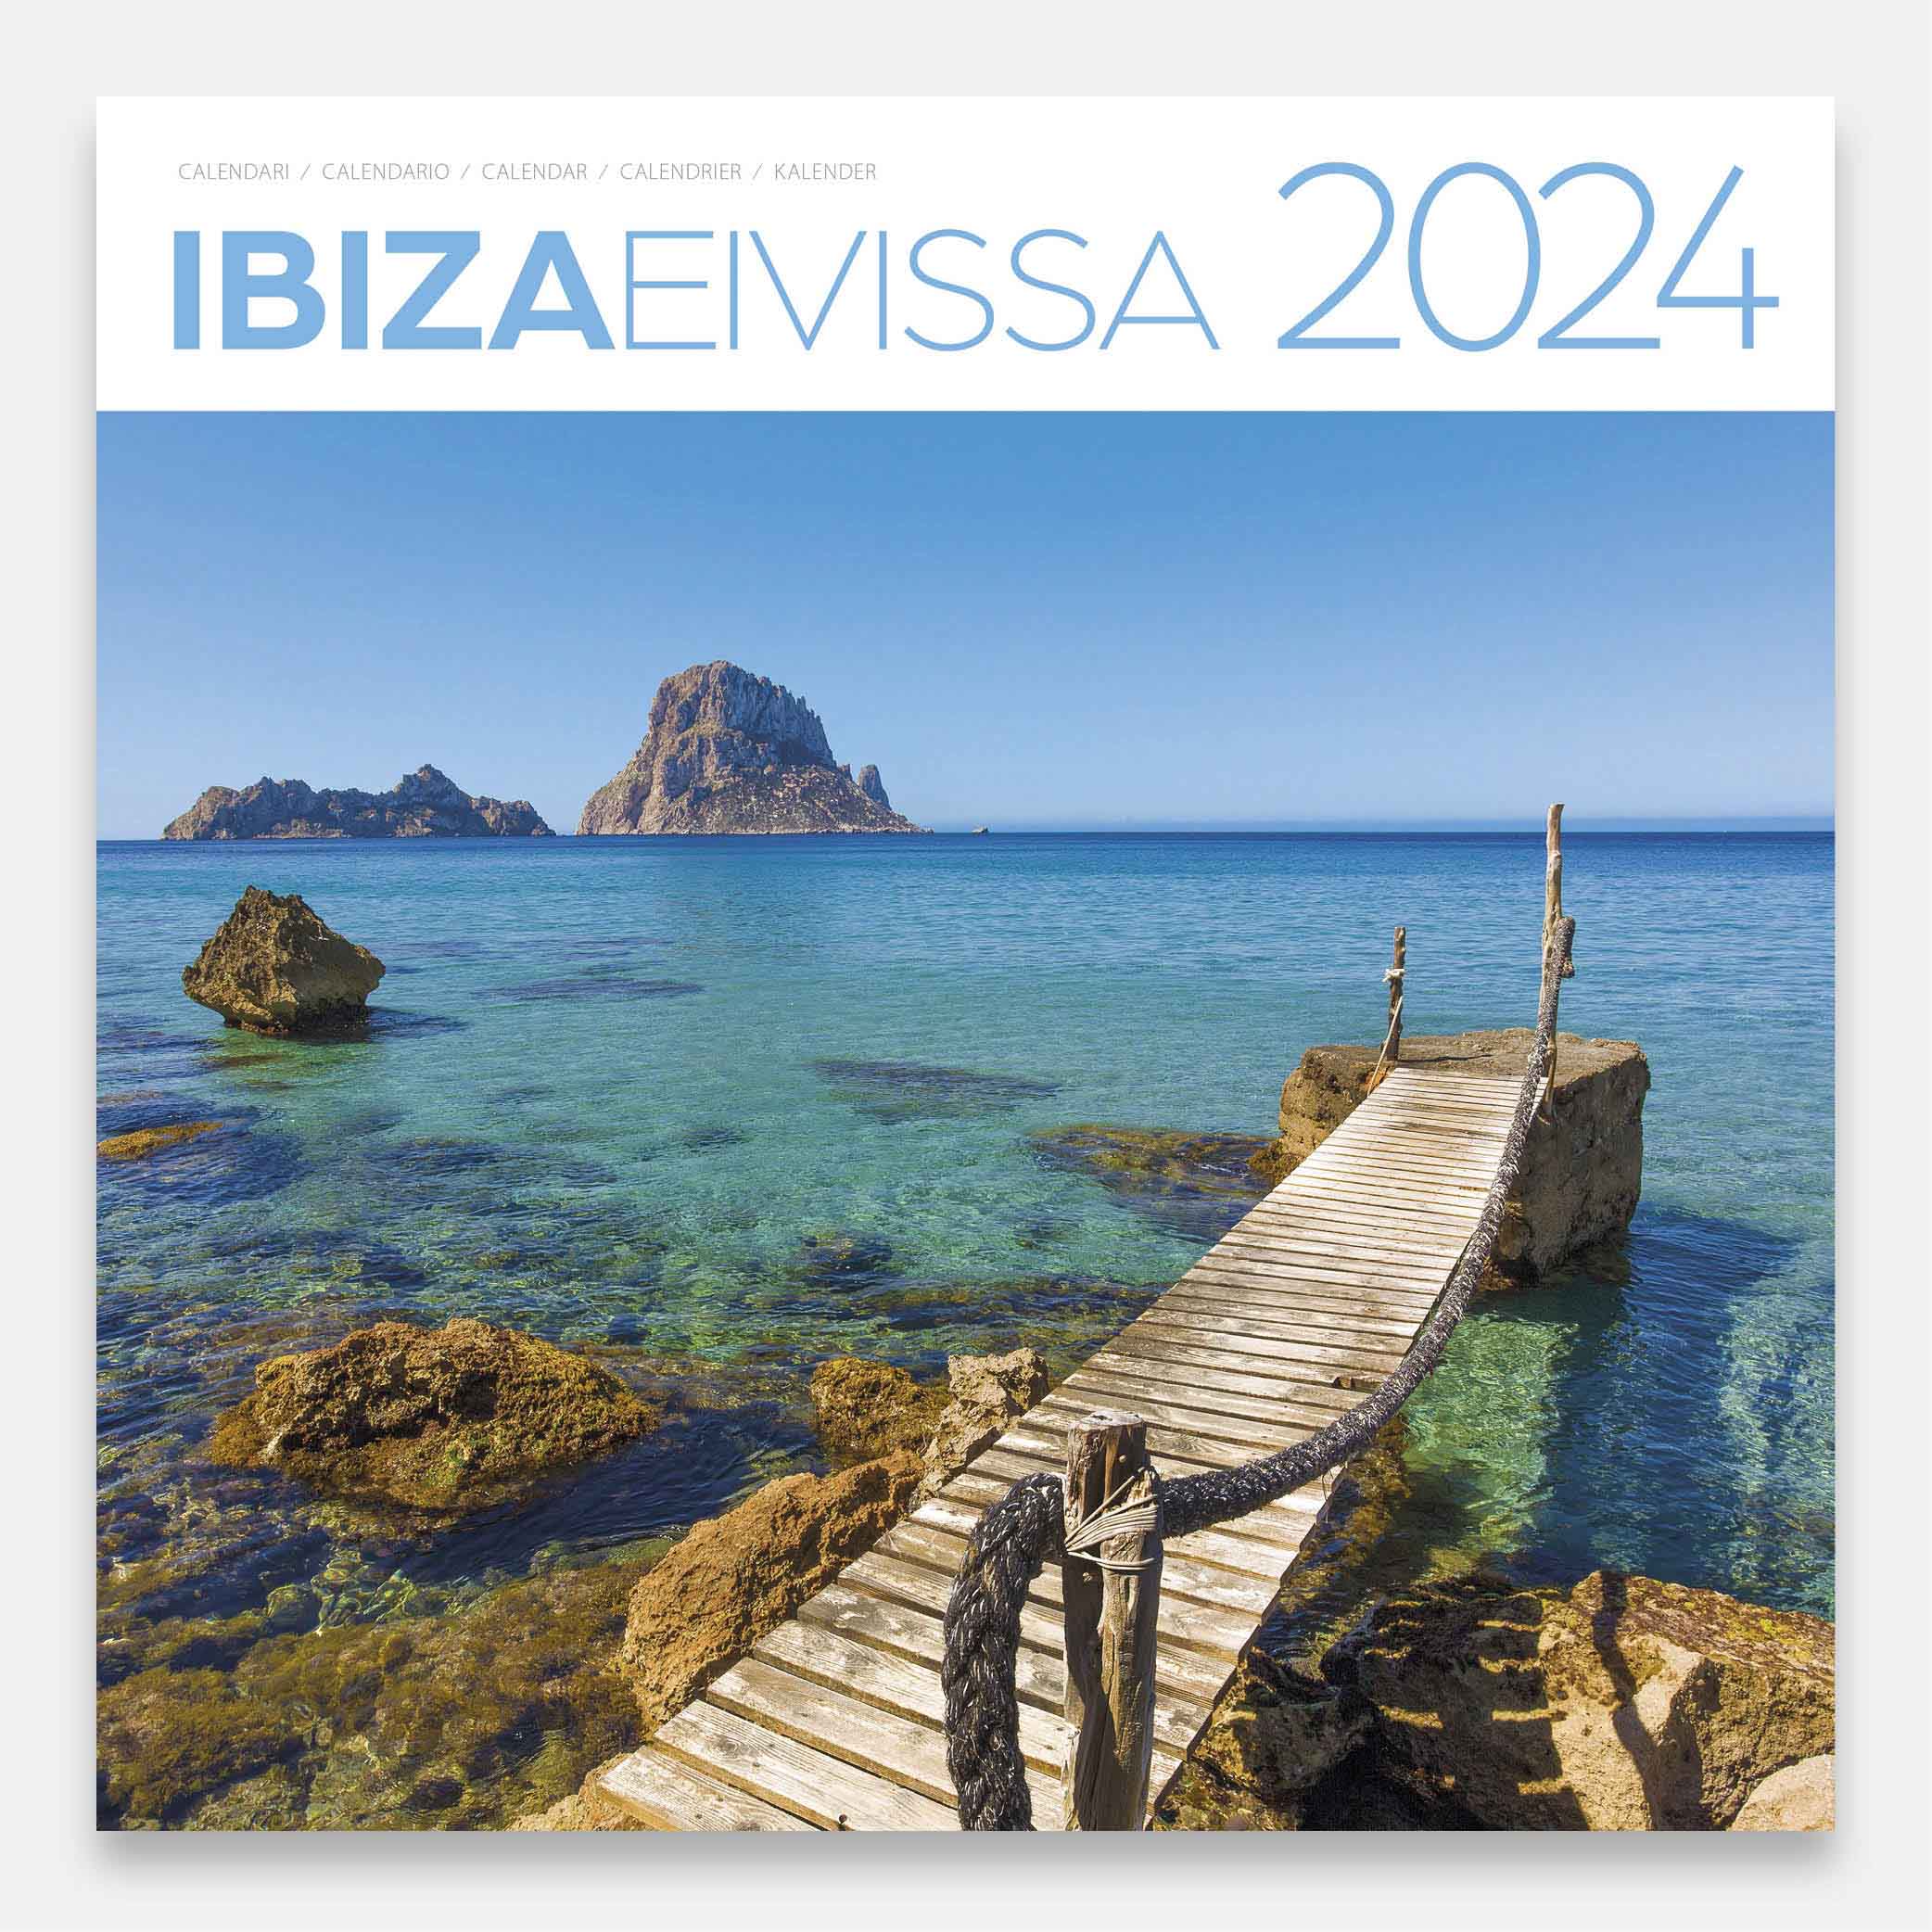 Calendario 2024 Ibiza 24eig calendario pared 2024 ibiza eivissa